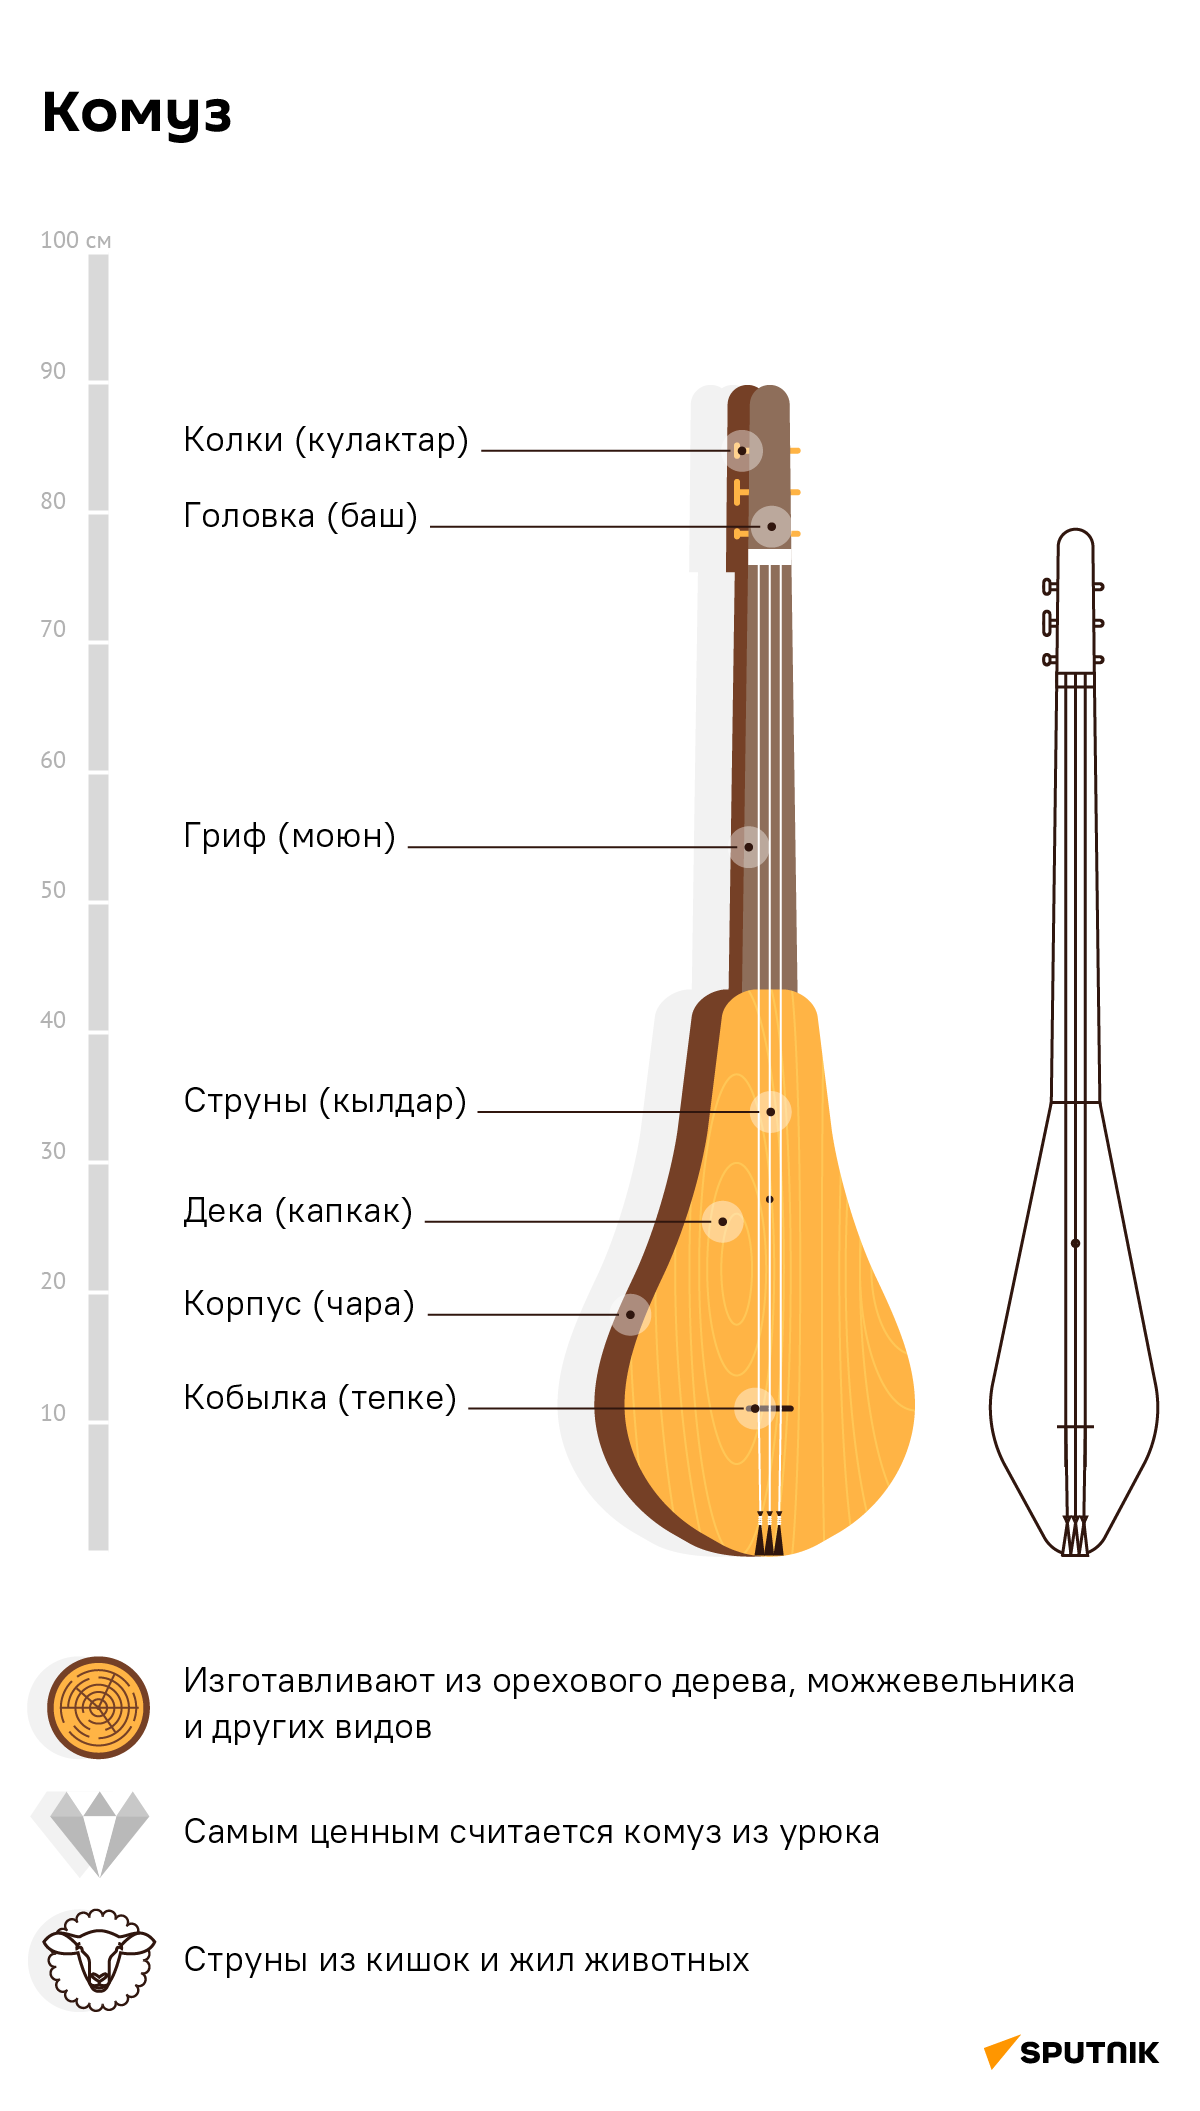 Комуз — древний кыргызский струнный инструмент - Sputnik Кыргызстан